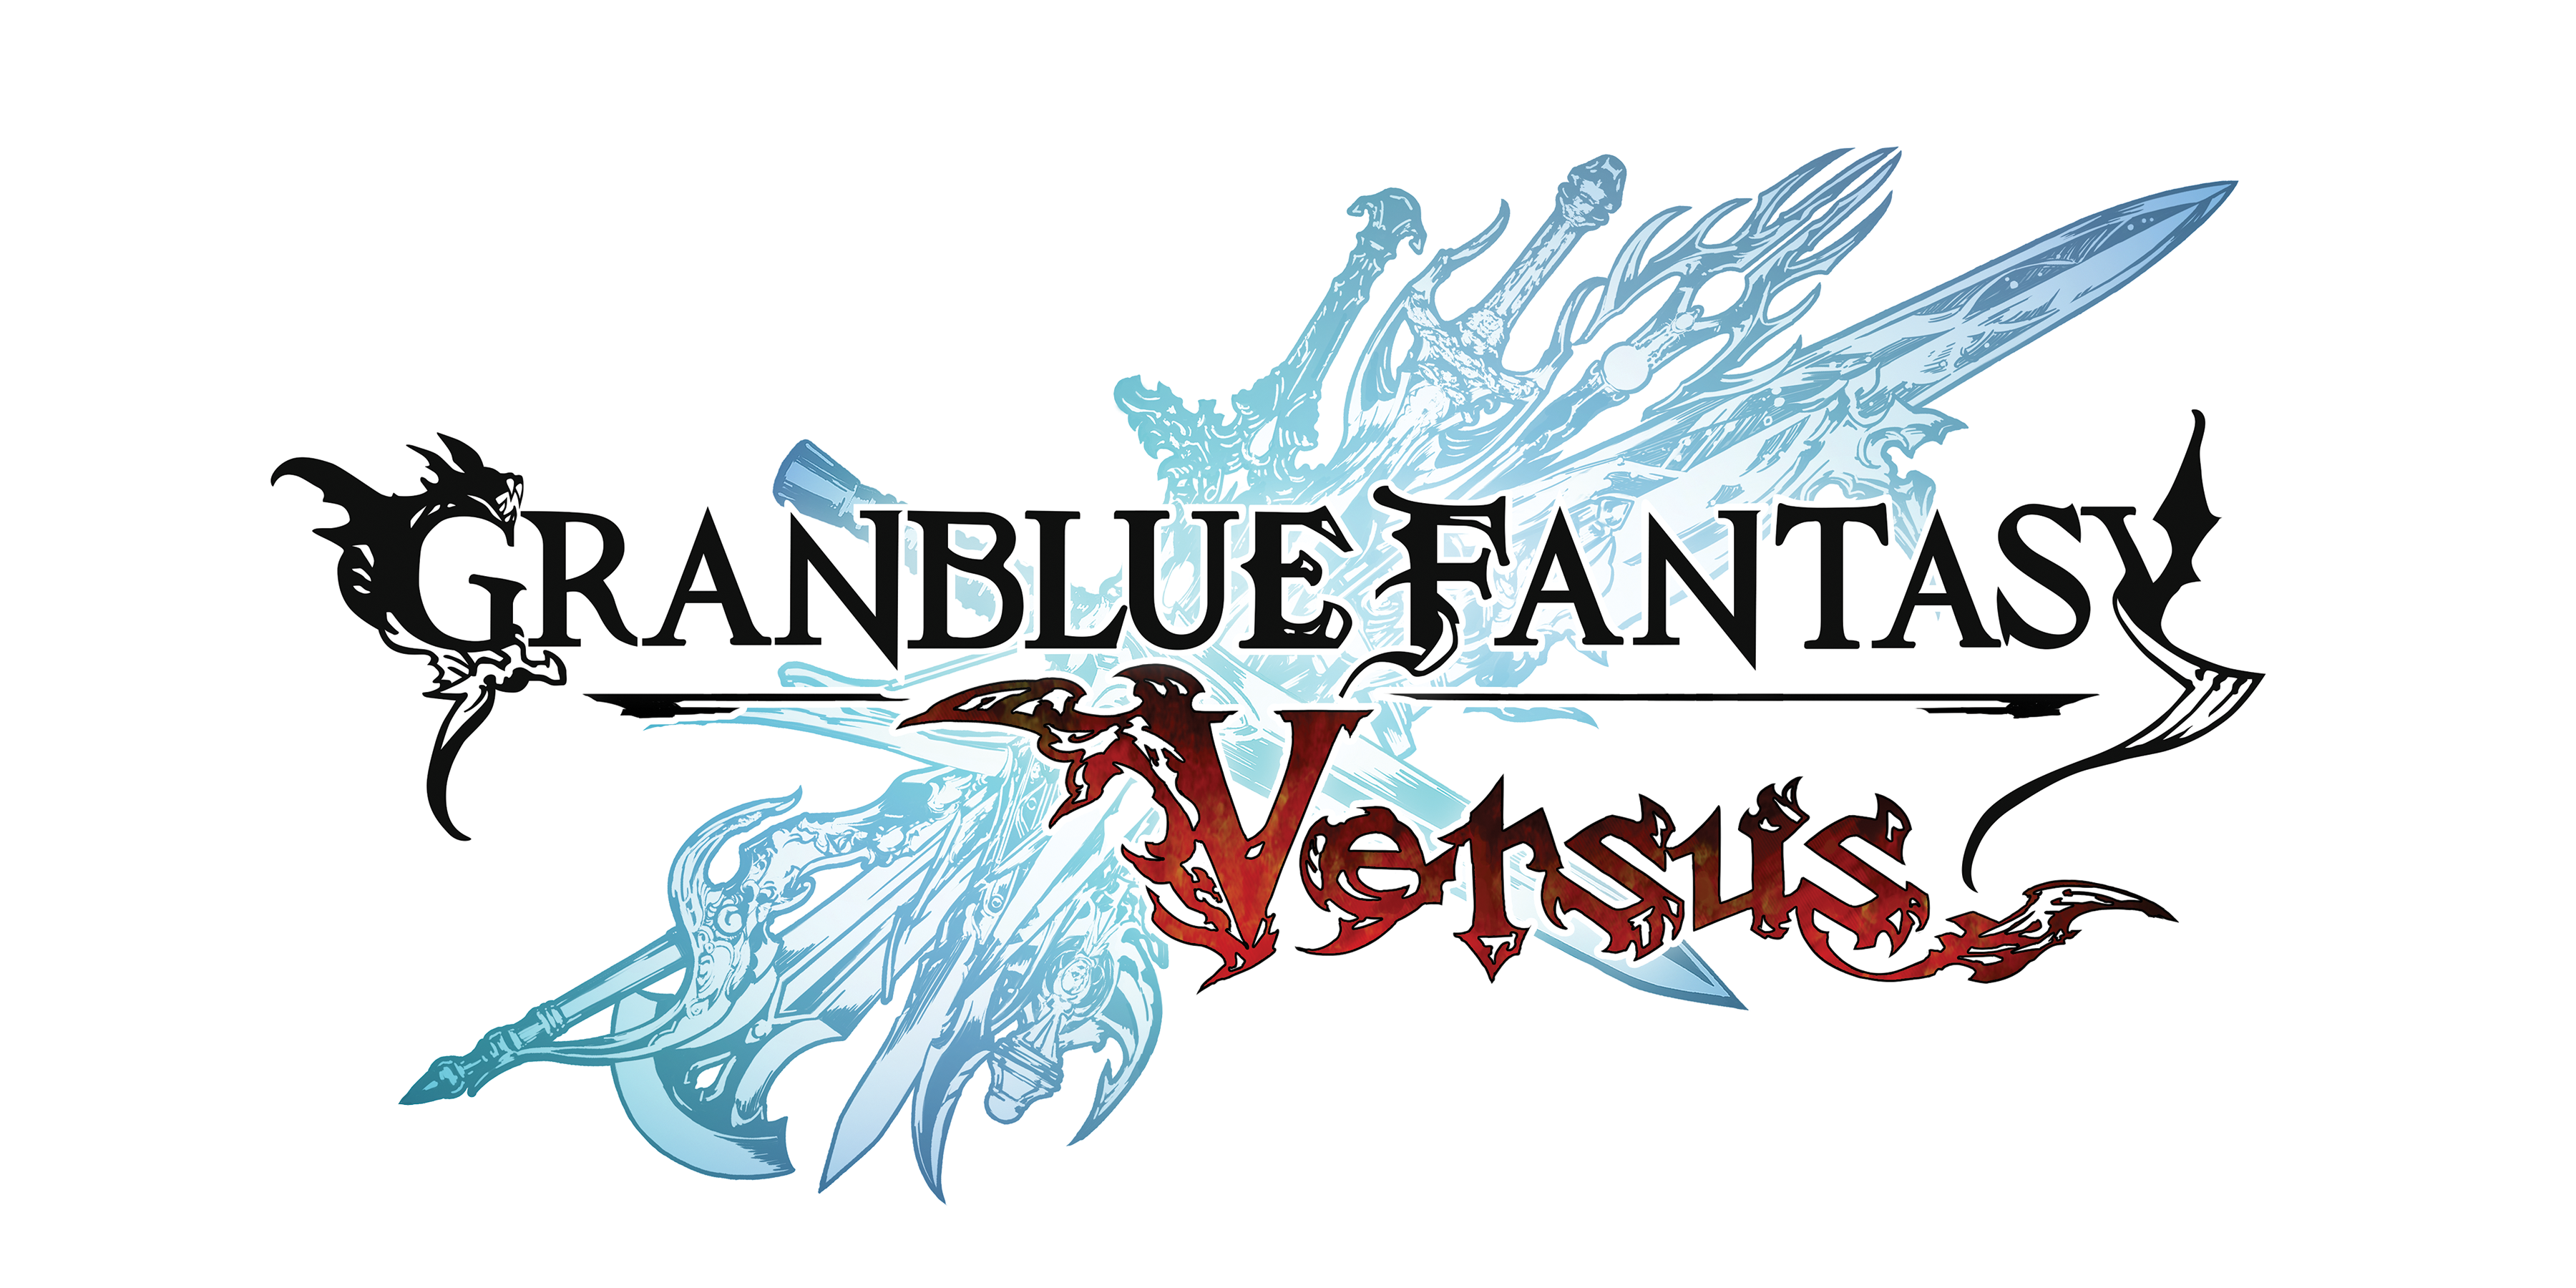 Granblue Fantasy Versus Reveals Chaos Bringer, Narmaya, Soriz